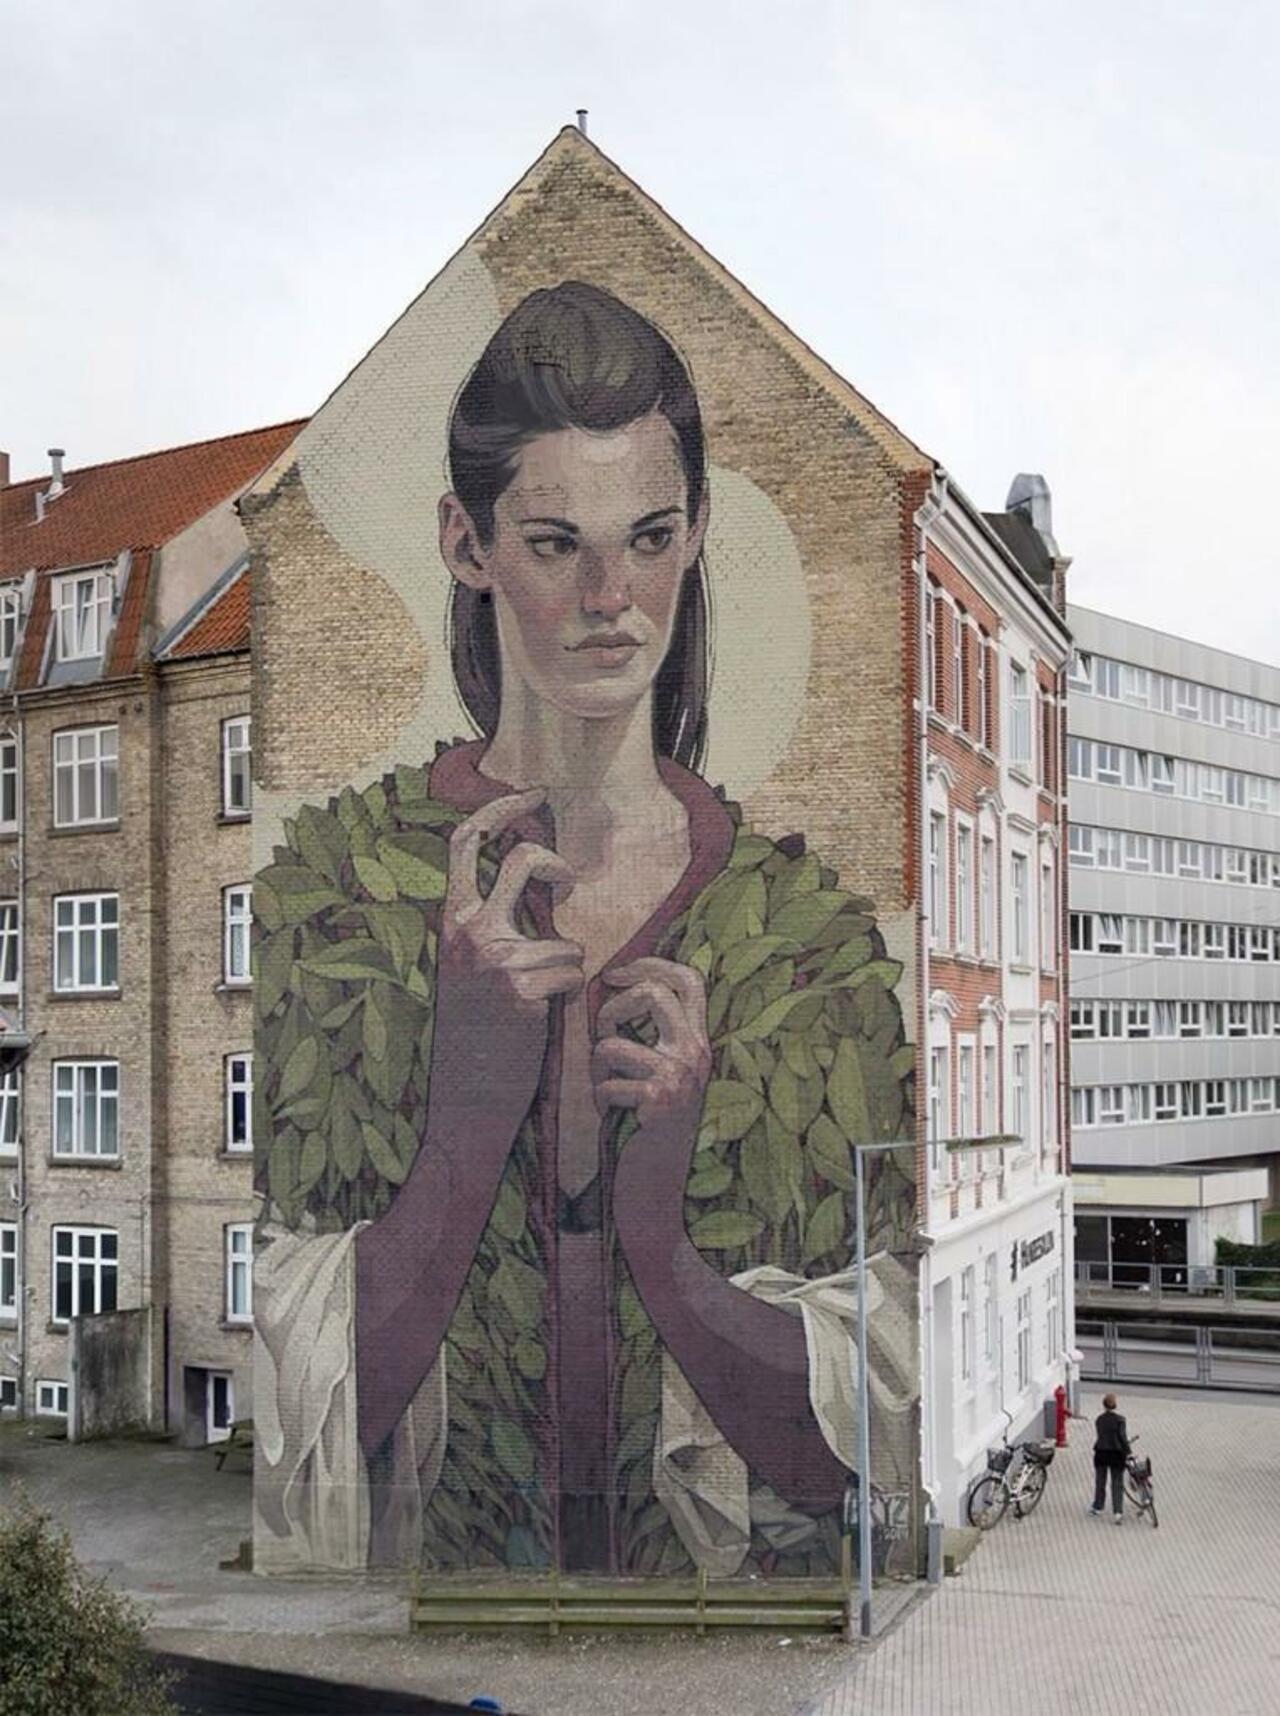 Artist @aryz_ #Aryz new Street Art mural For WeAart - Aalborg, Denmark 

#art #mural #graffiti #streetart http://t.co/2w29eA2FGn